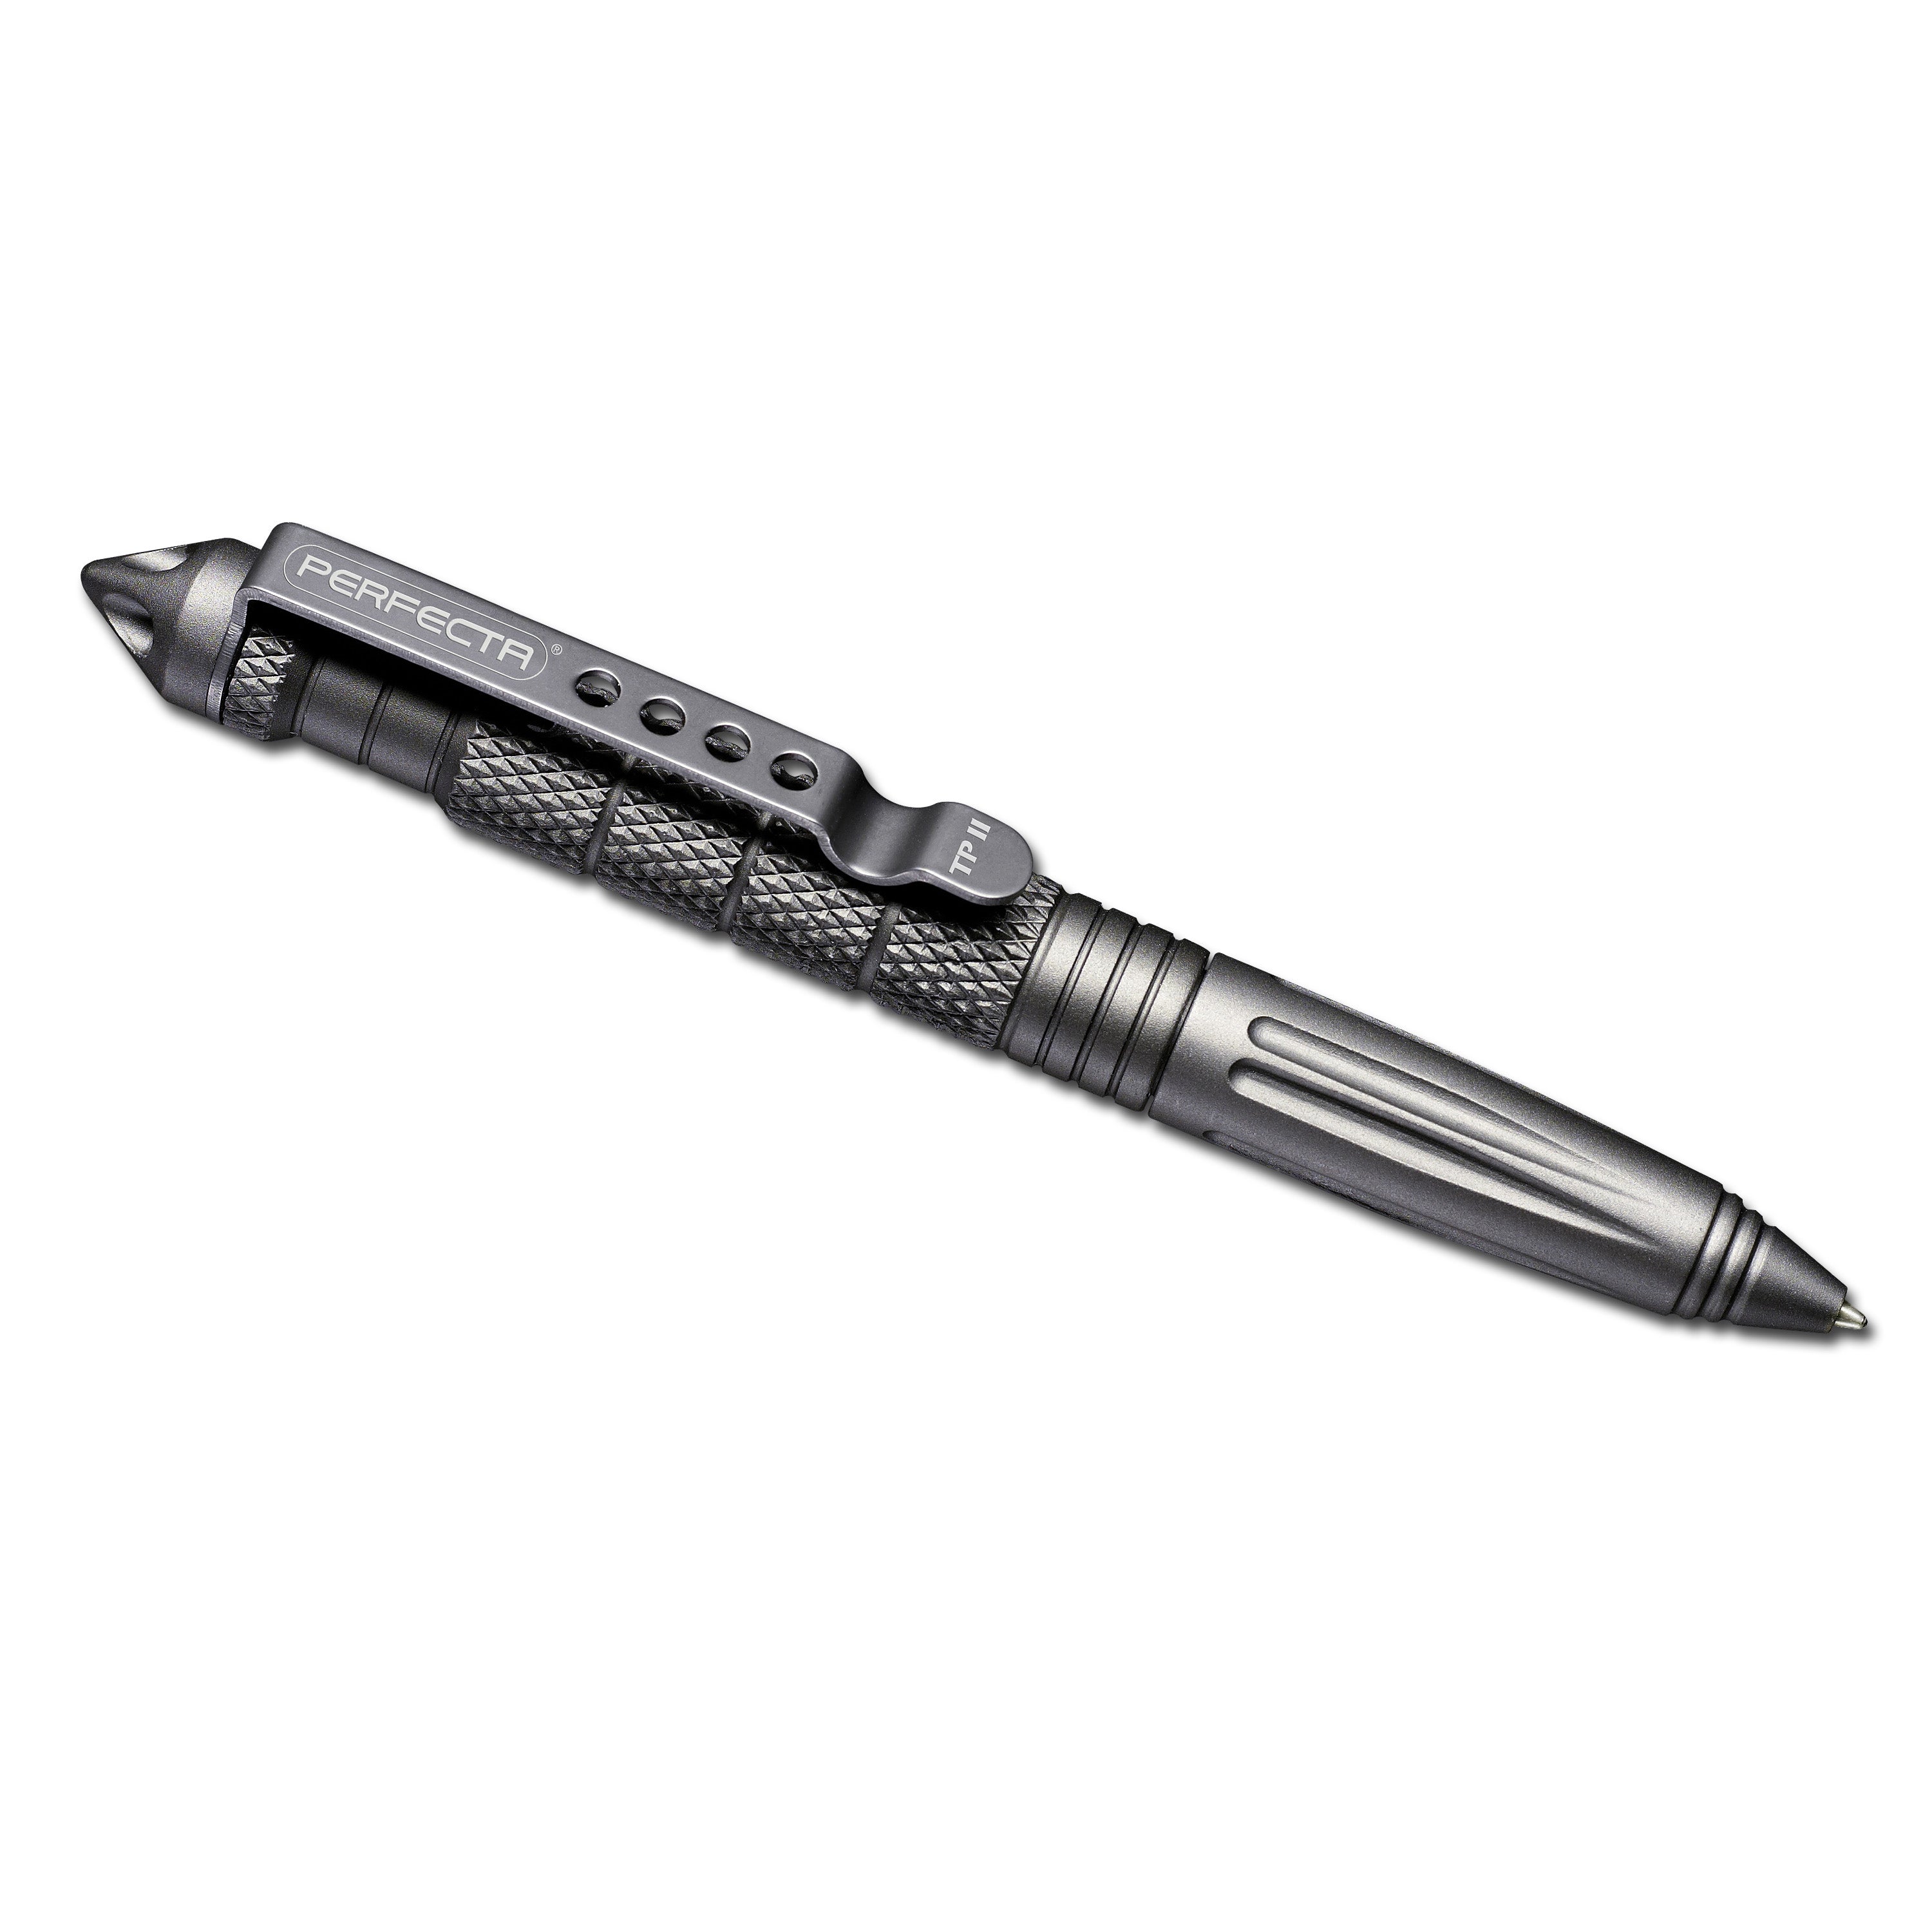 Tactical Pen Perfecta TP II Titan